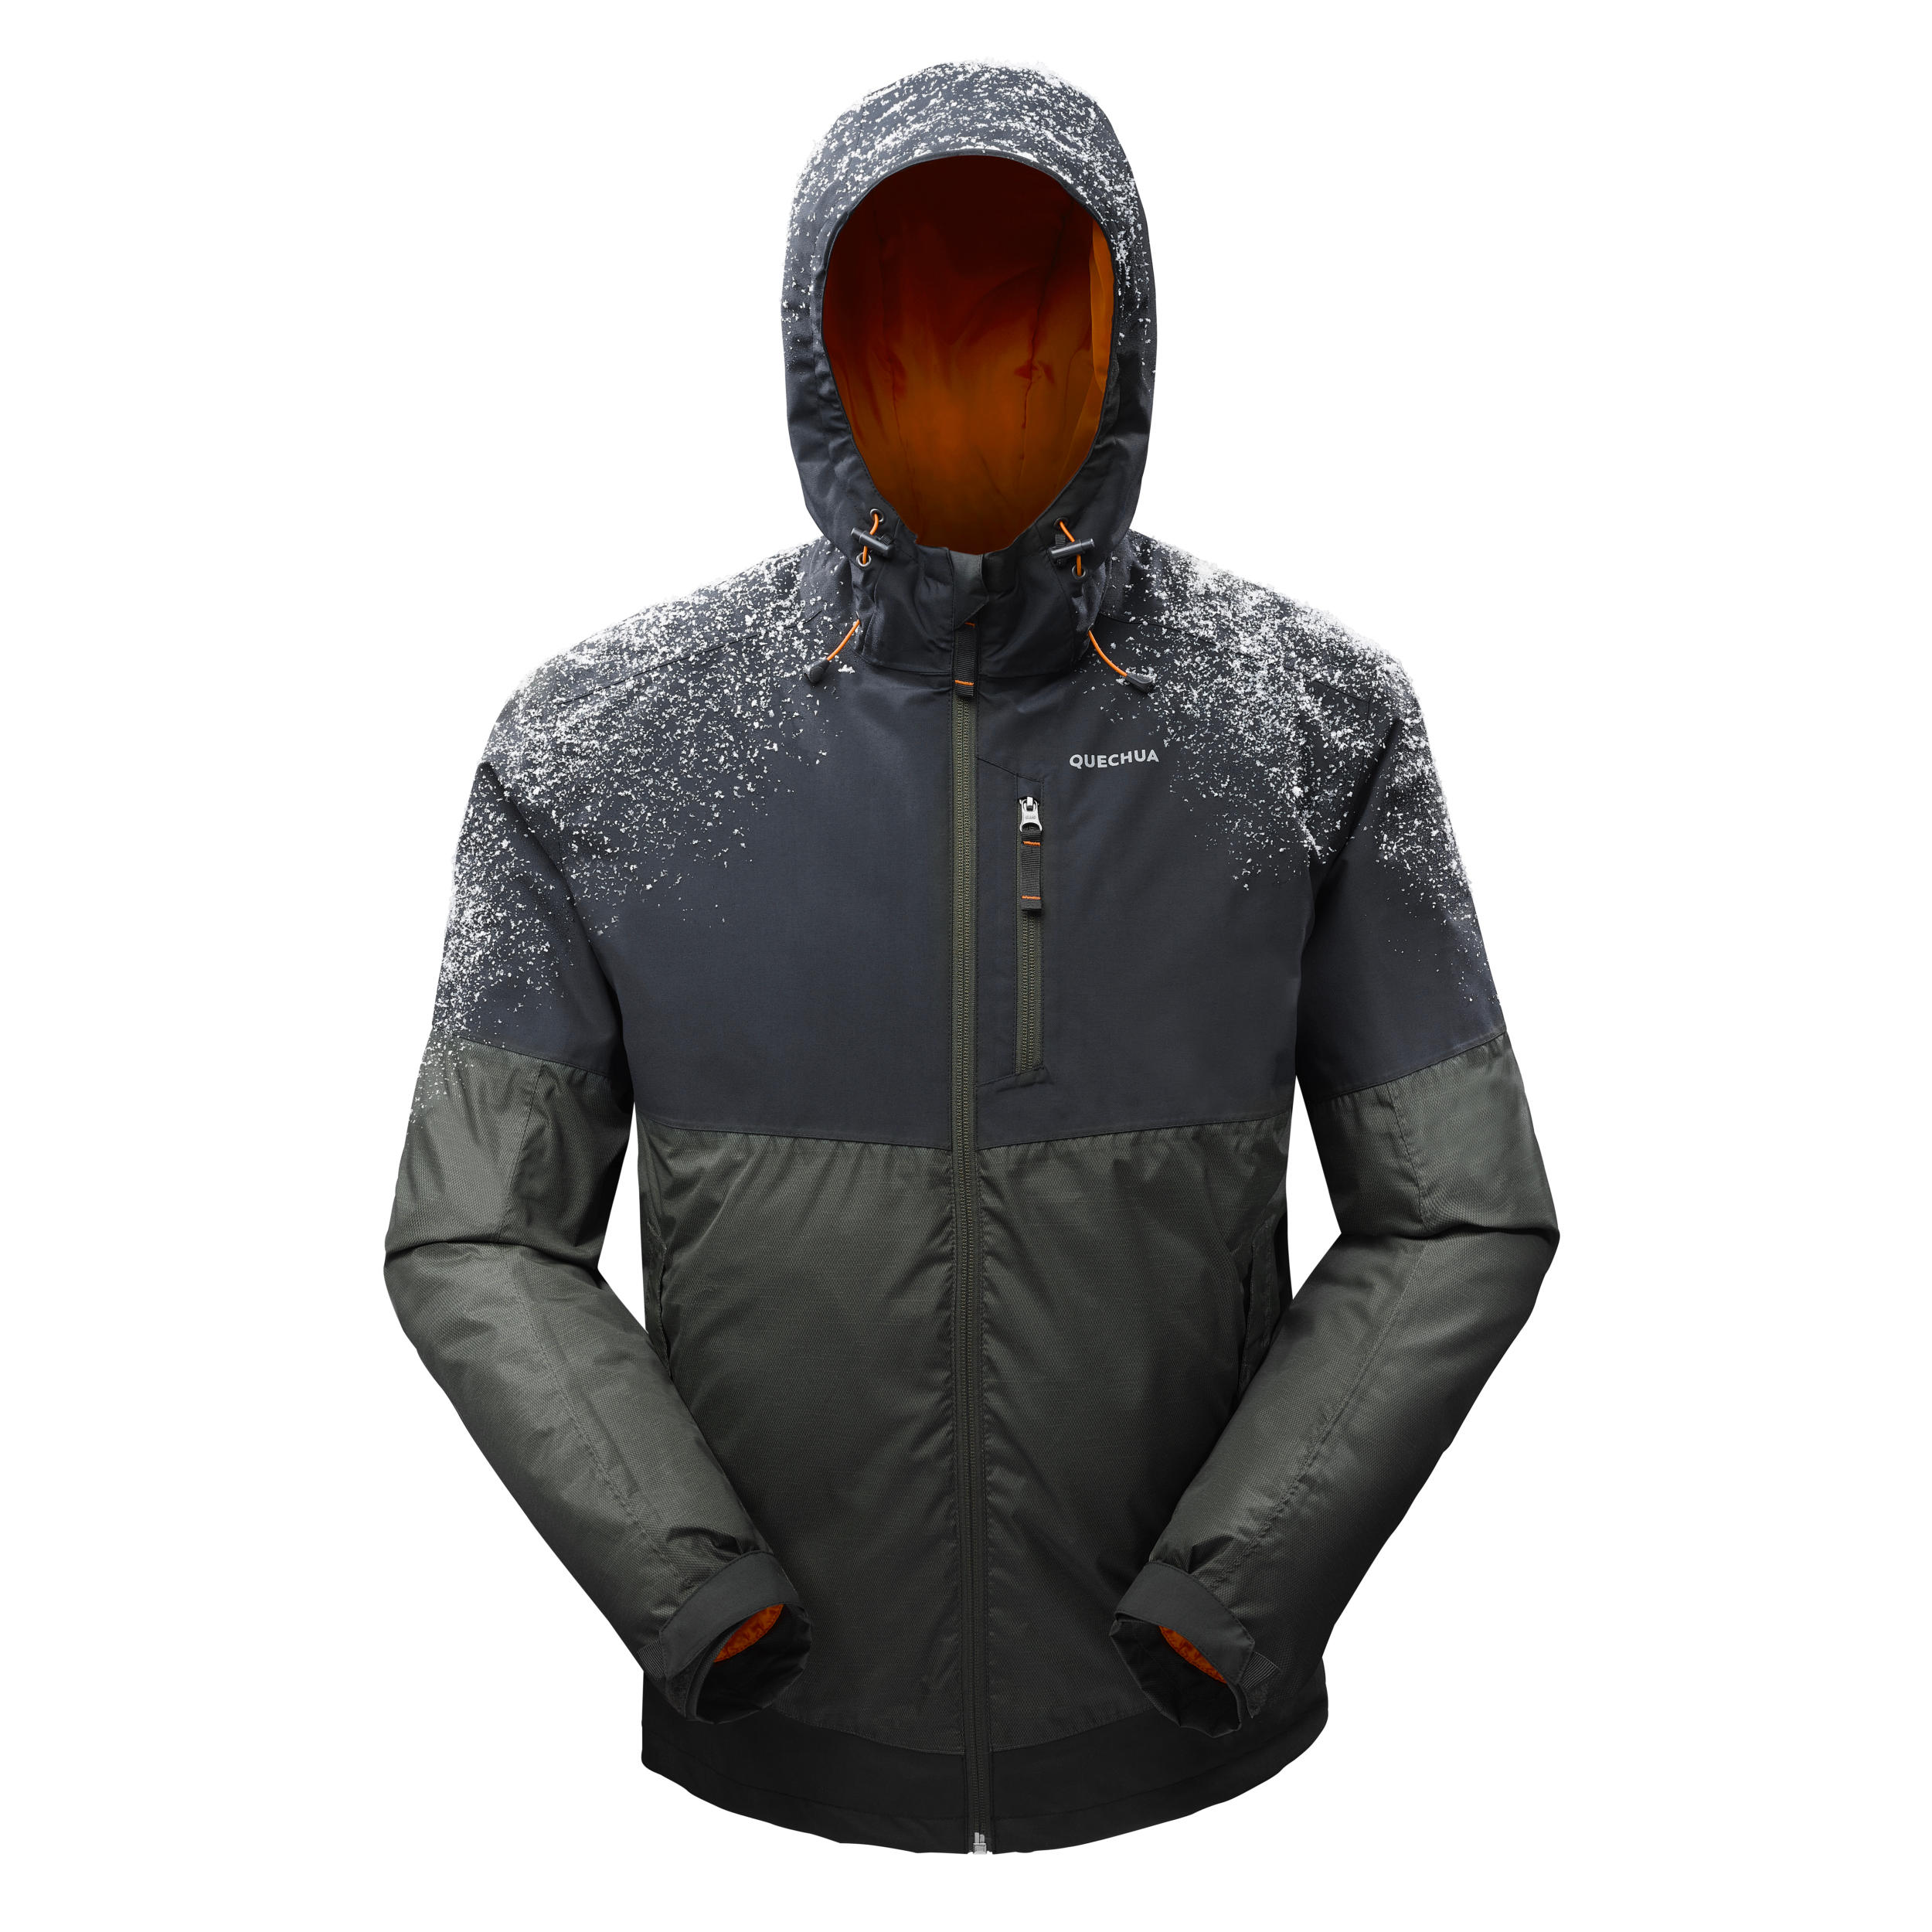 Men’s Waterproof Winter Hiking Jacket - SH100 X-WARM -10°C 13/13